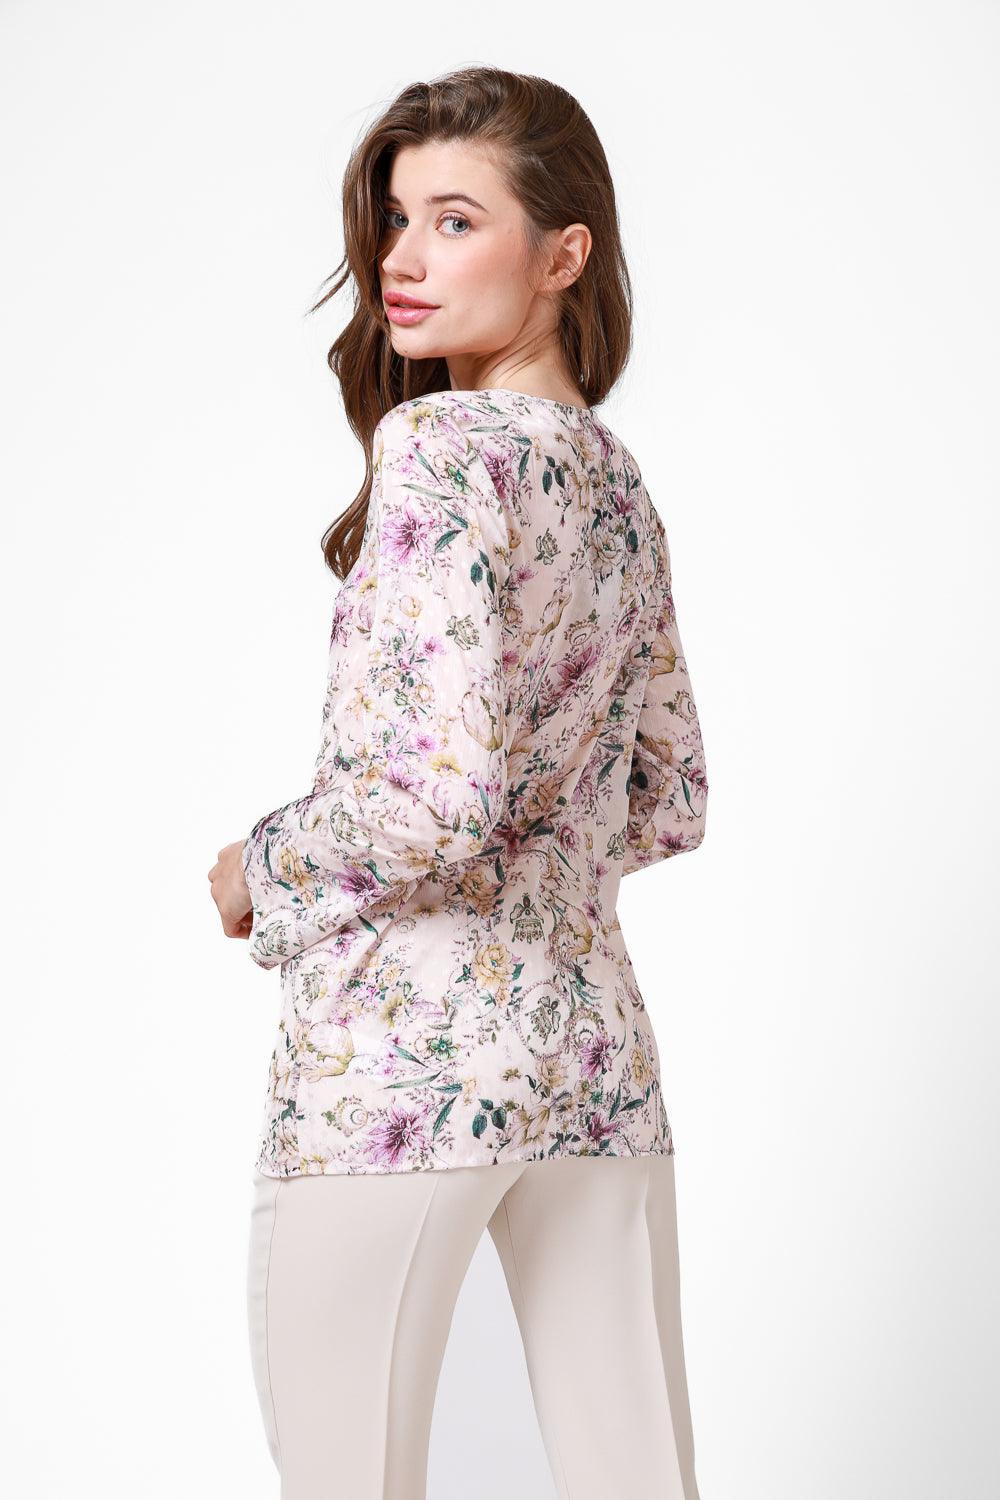 חולצת שיפון עם הדפס PINK FLOWERS - MASHBIR//365